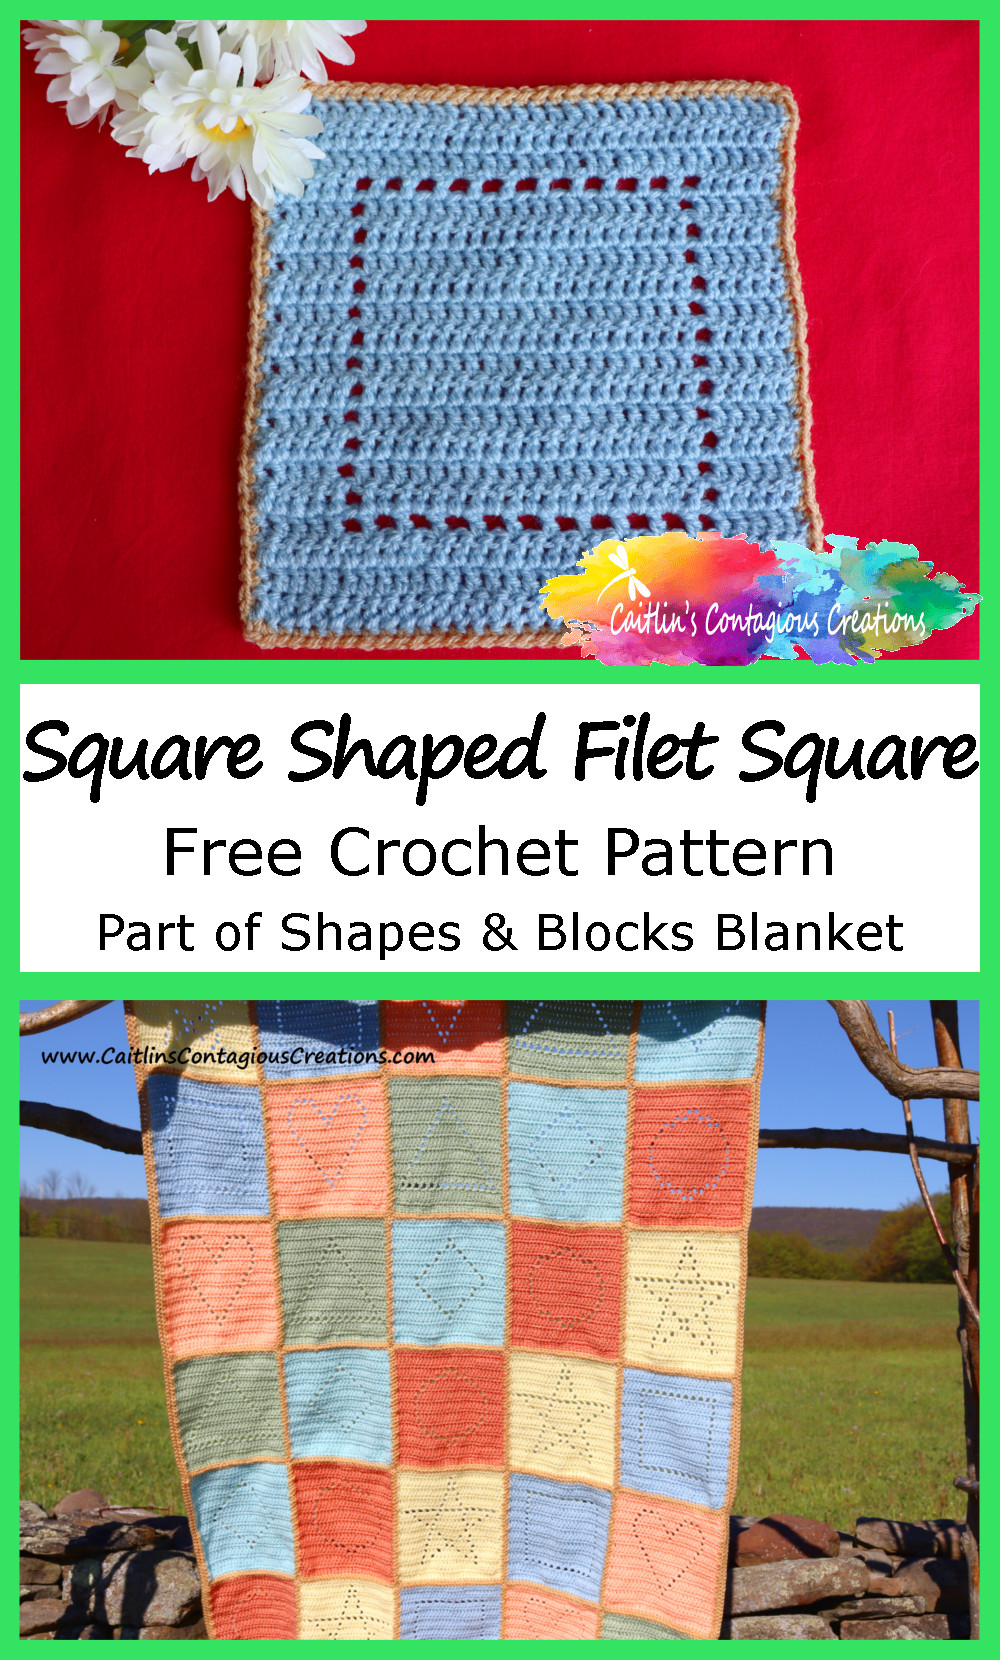 Super easy beginner filet square crochet pattern